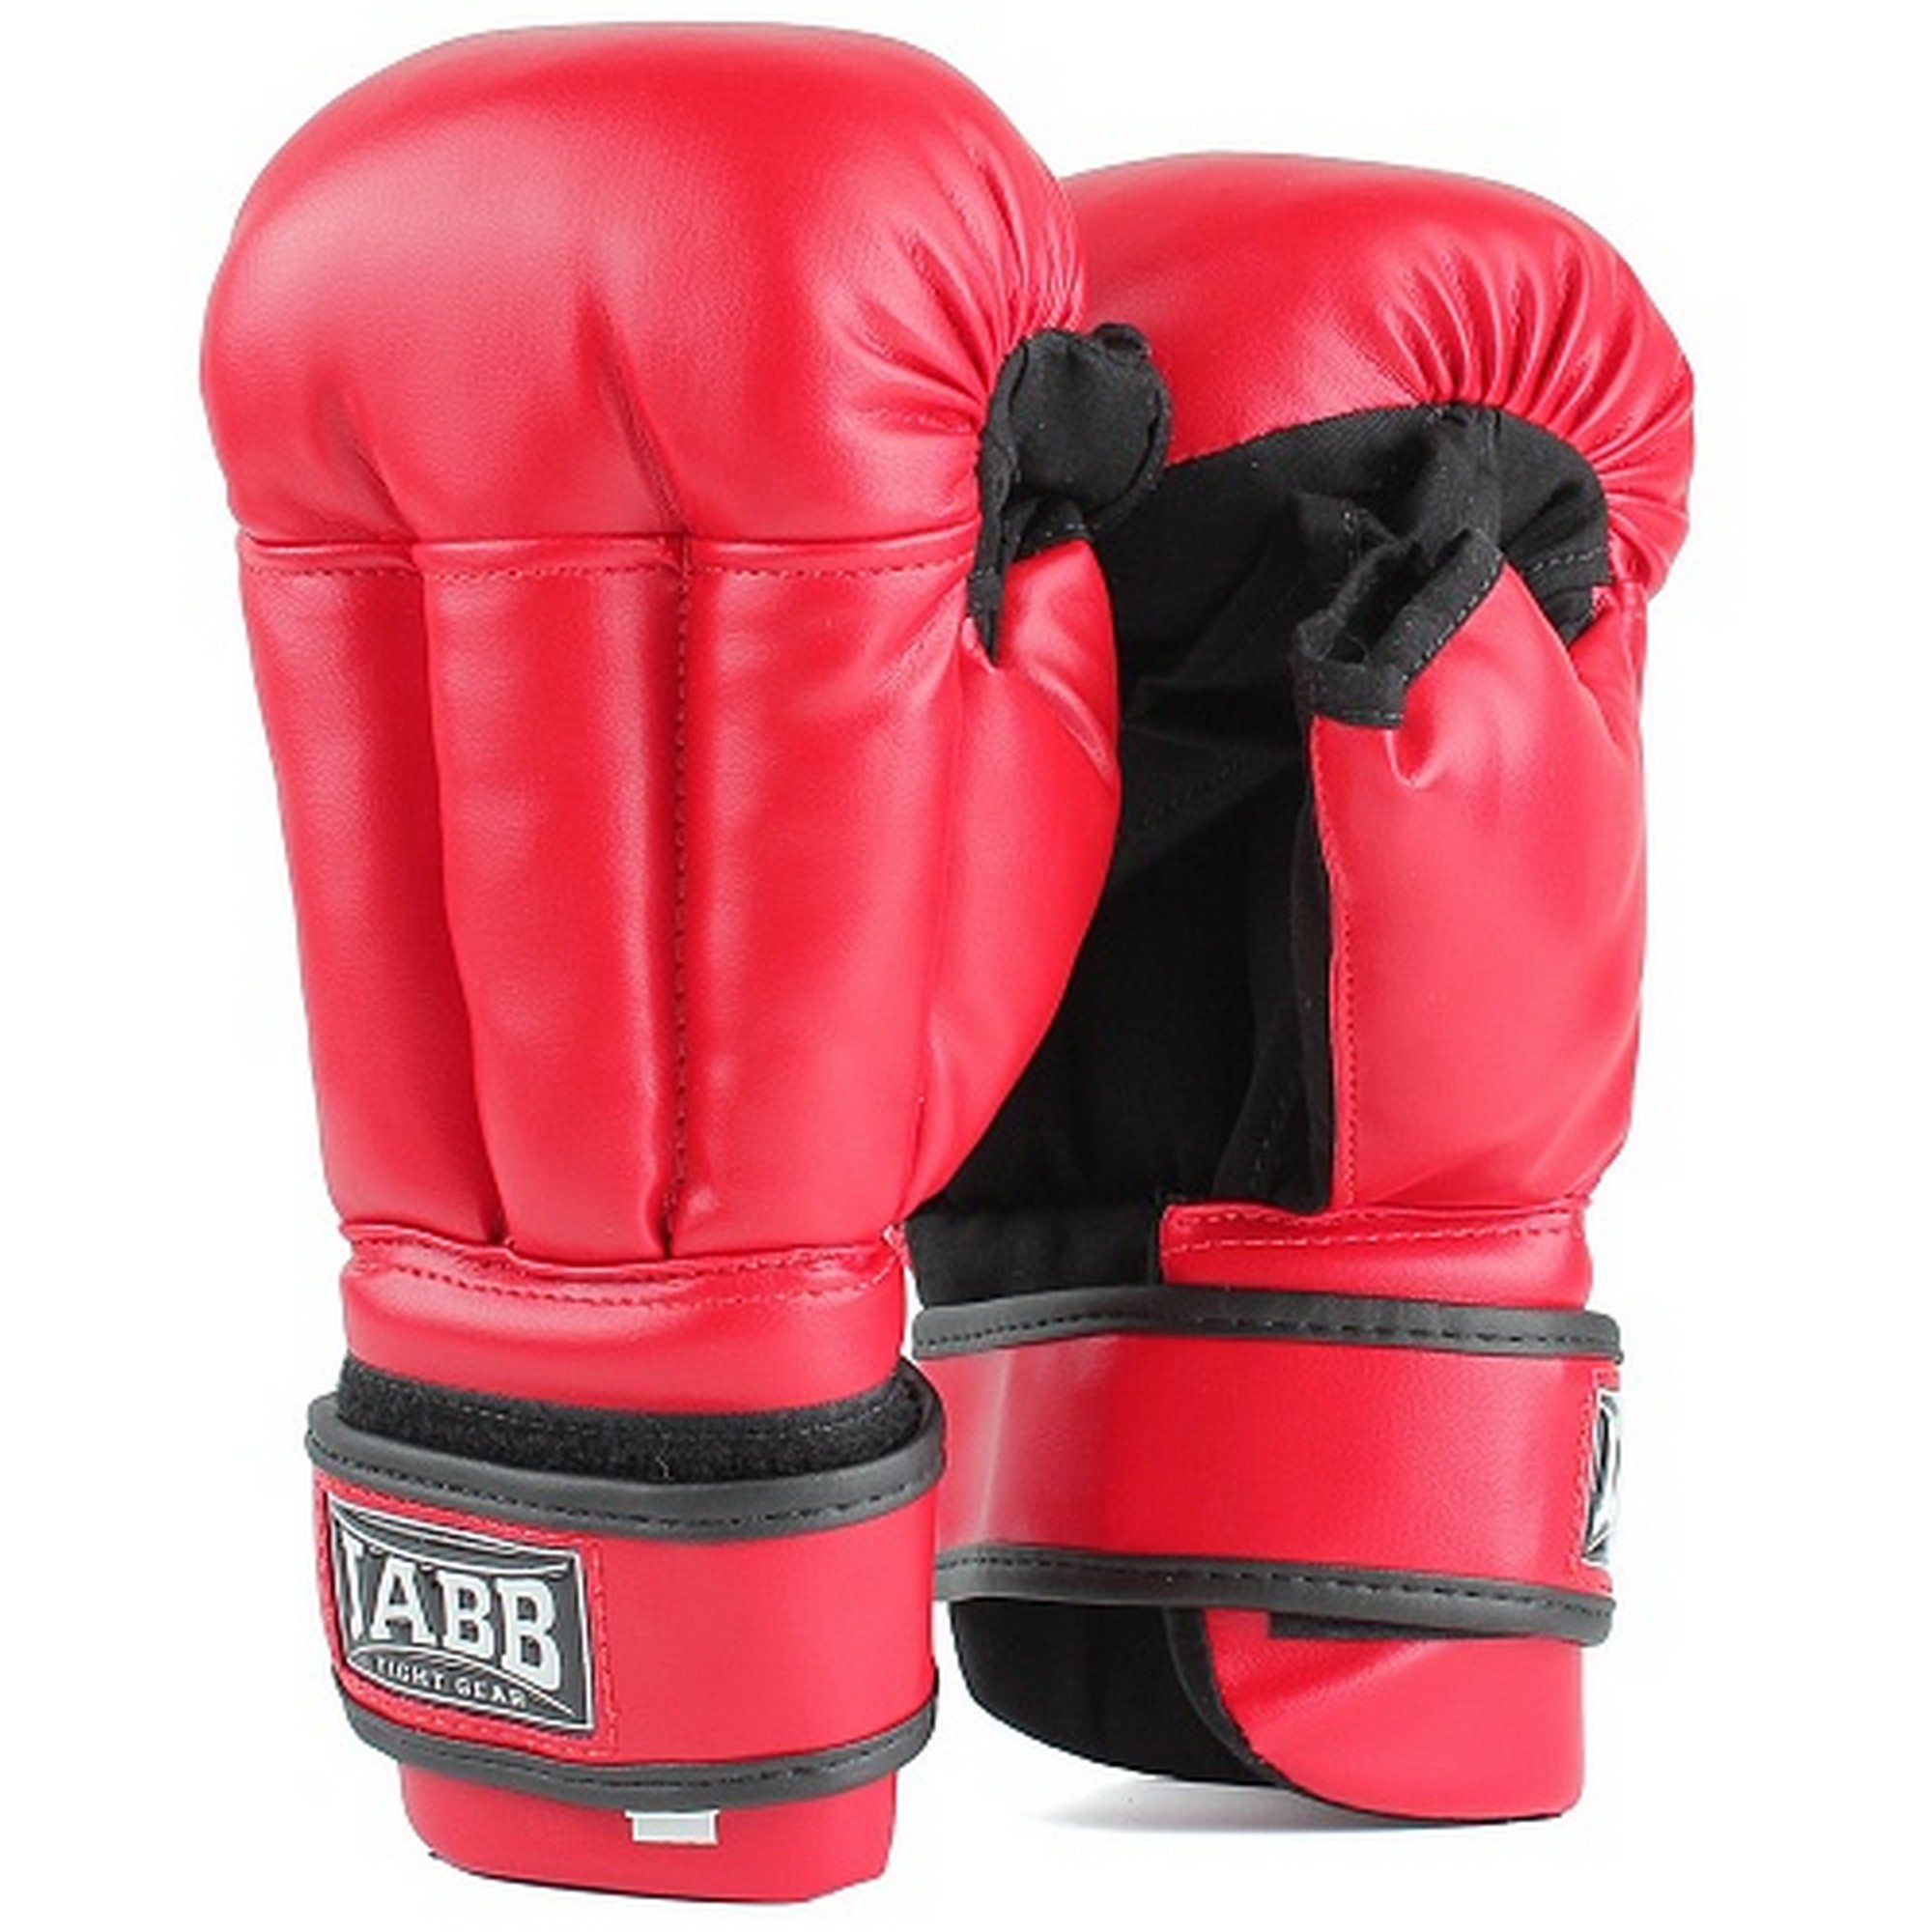 Купить Перчатки для рукопашного боя (иск.кожа) Jabb JE-3633 красный,